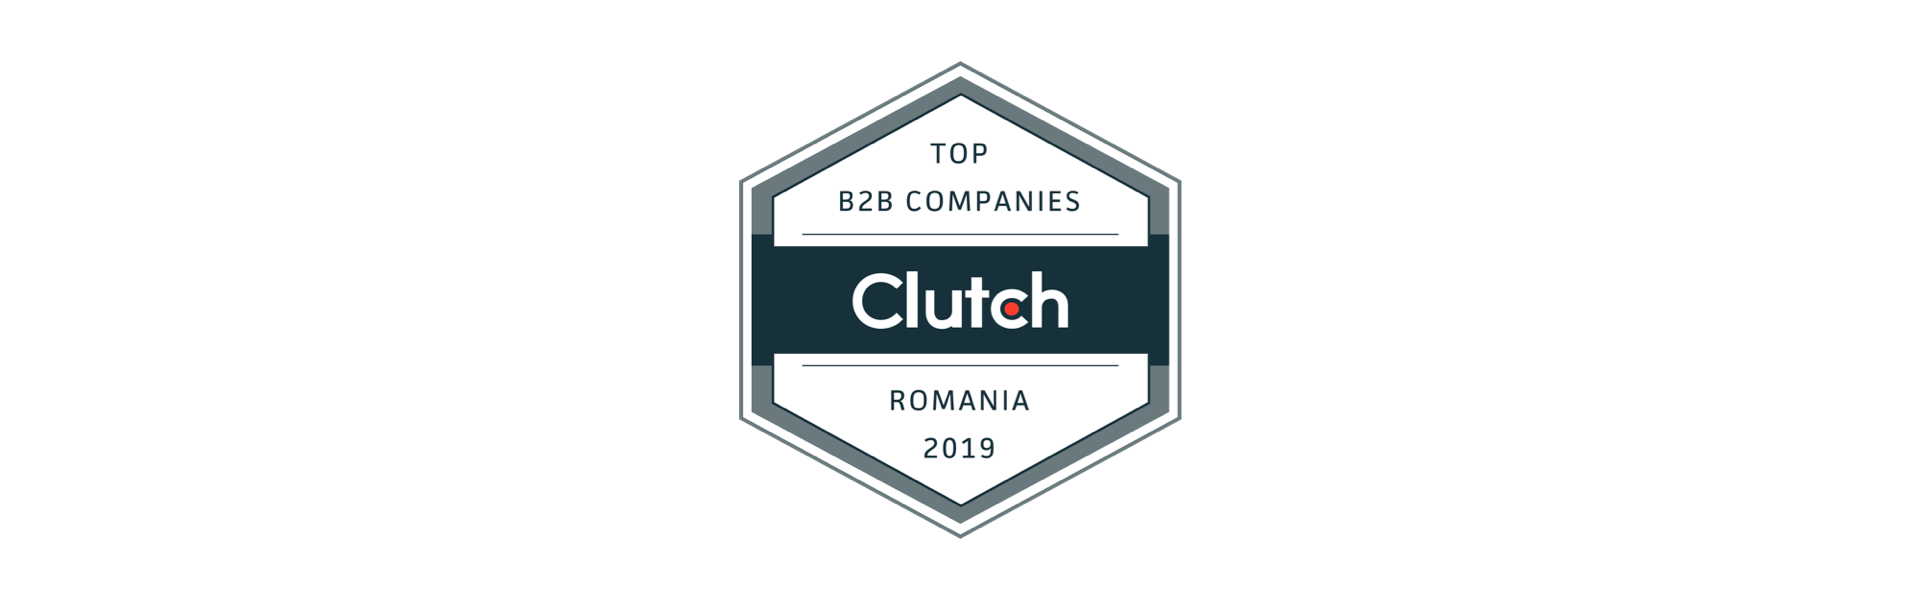 top developer in romania by clutch